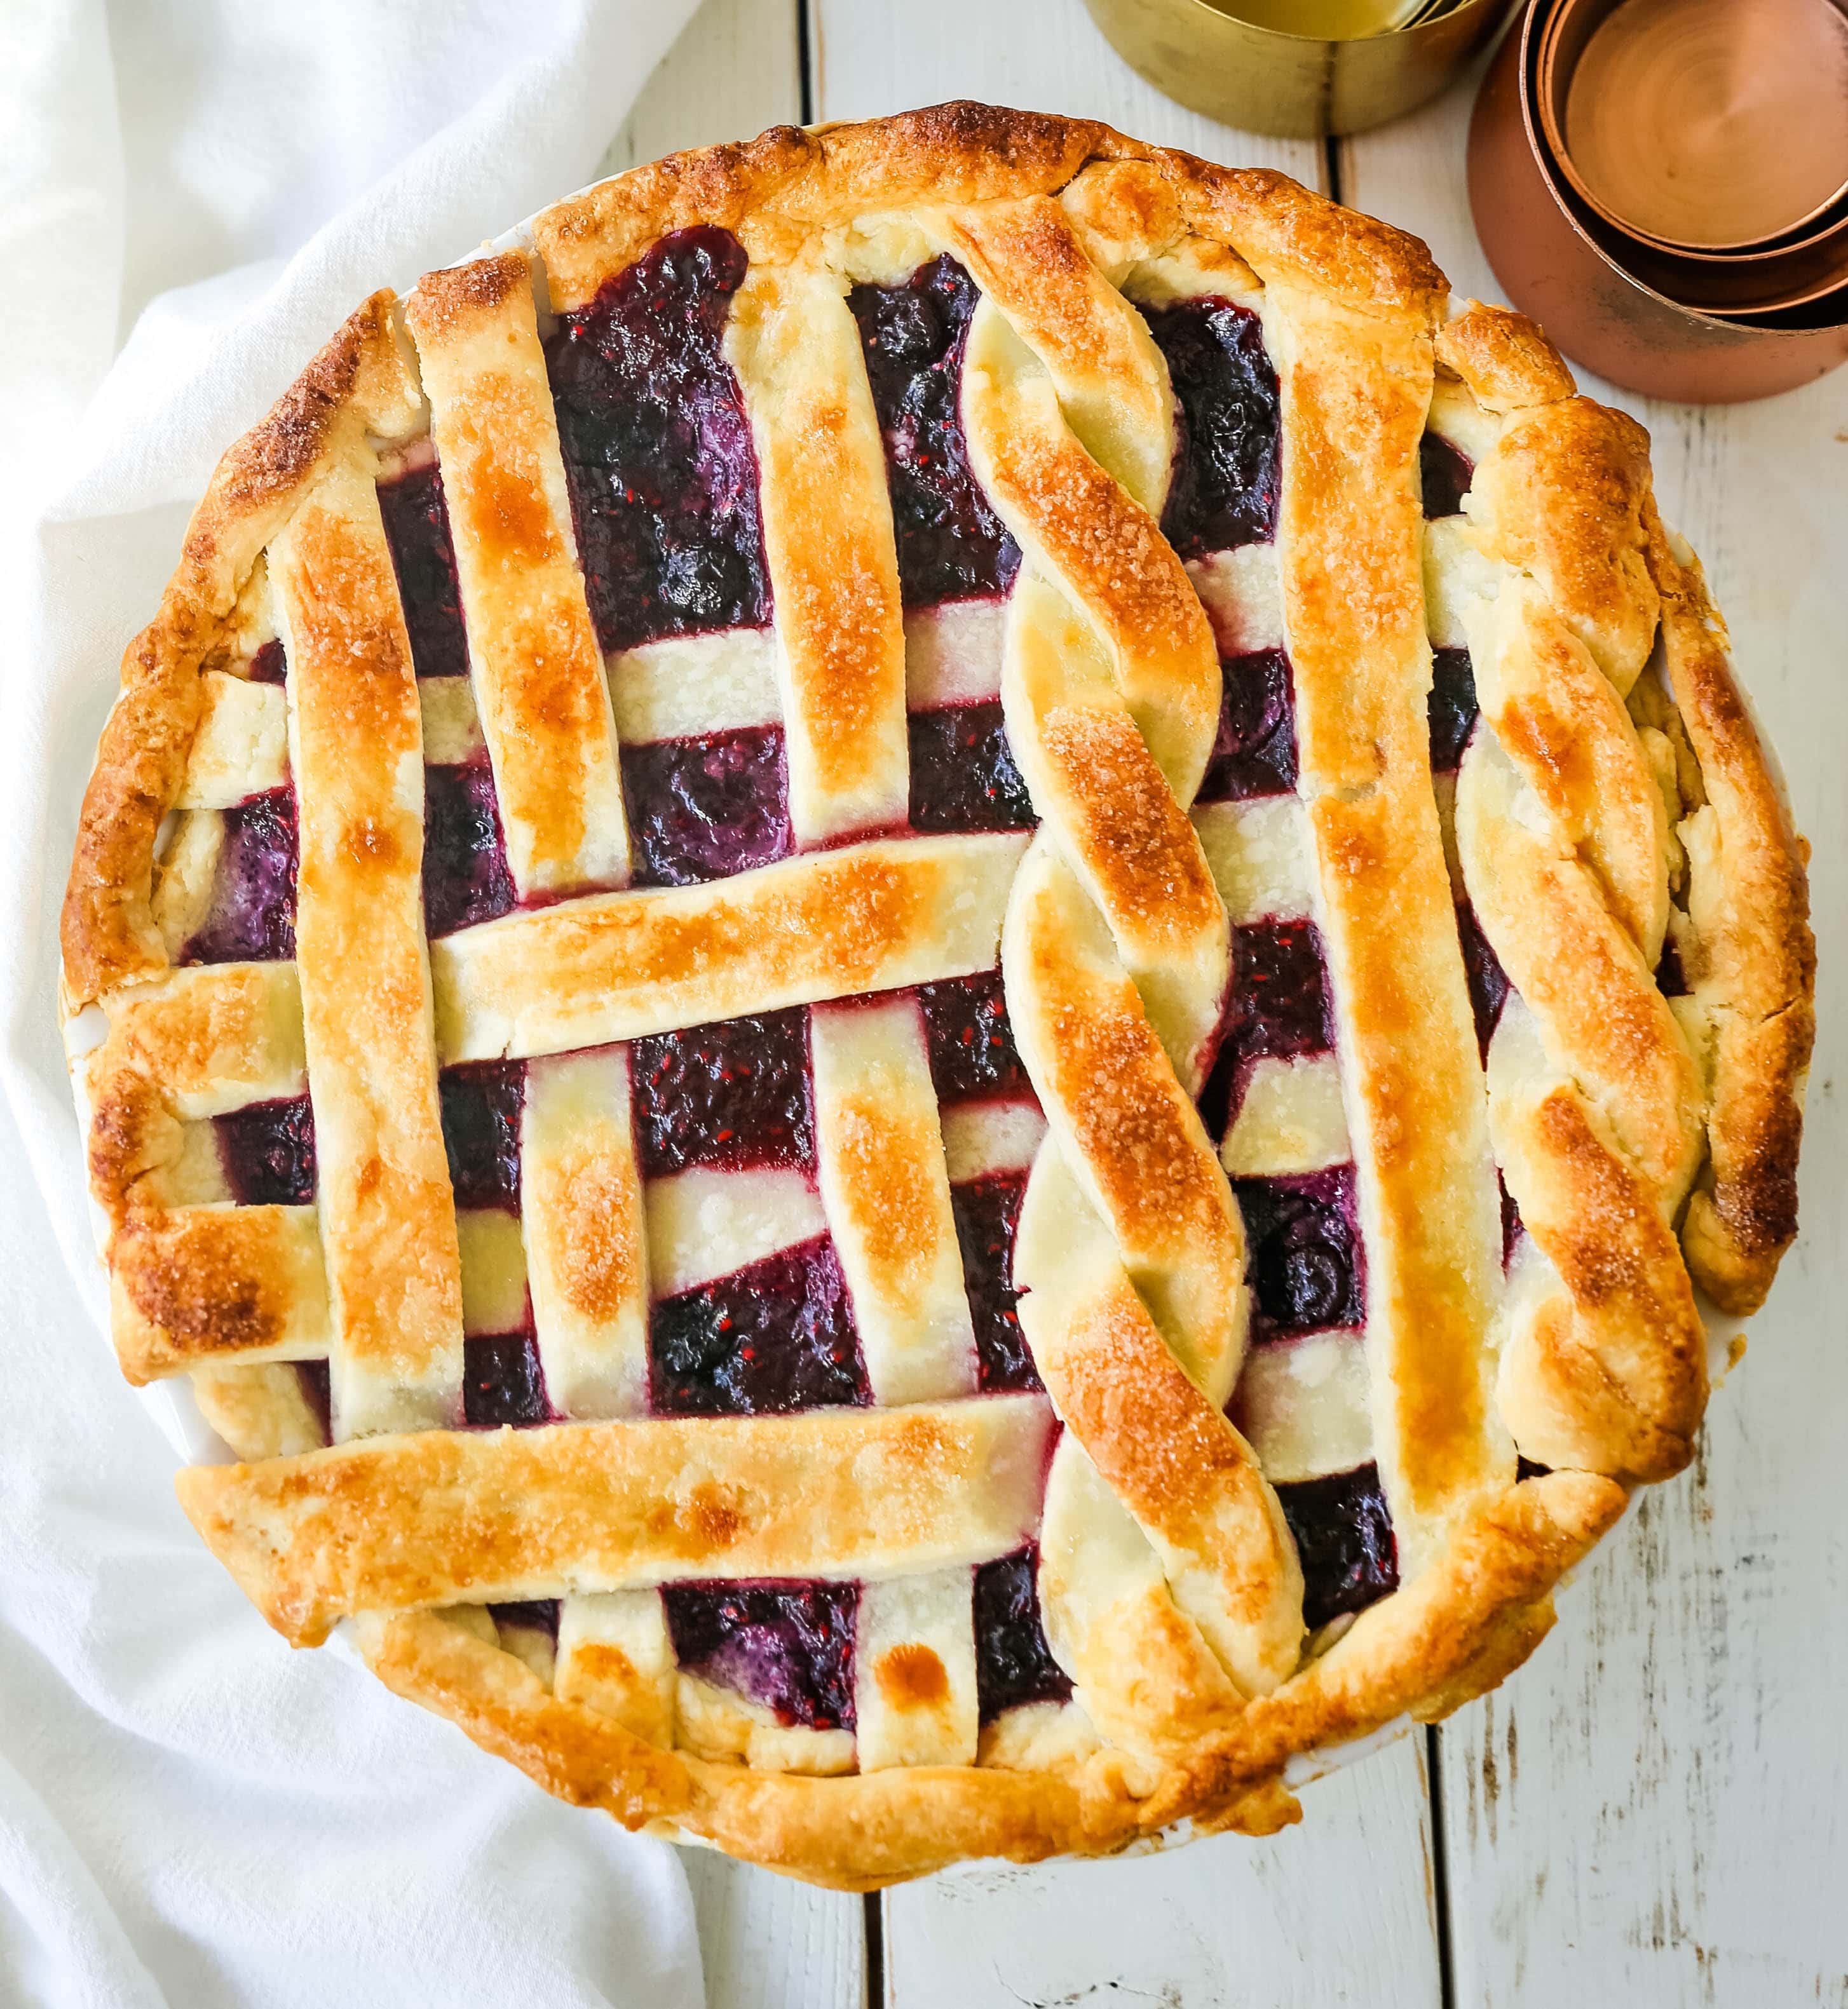 Triple Berry Pie. Najlepszy domowy przepis na ciasto jagodowe z maślaną skórką. Dodaj do niego lody waniliowe i masz idealny deser jagodowy! Najlepszy przepis na ciasto jagodowe. www.modernhoney.com #berrypie #pie #berries #tripleberrypie #thanksgiving